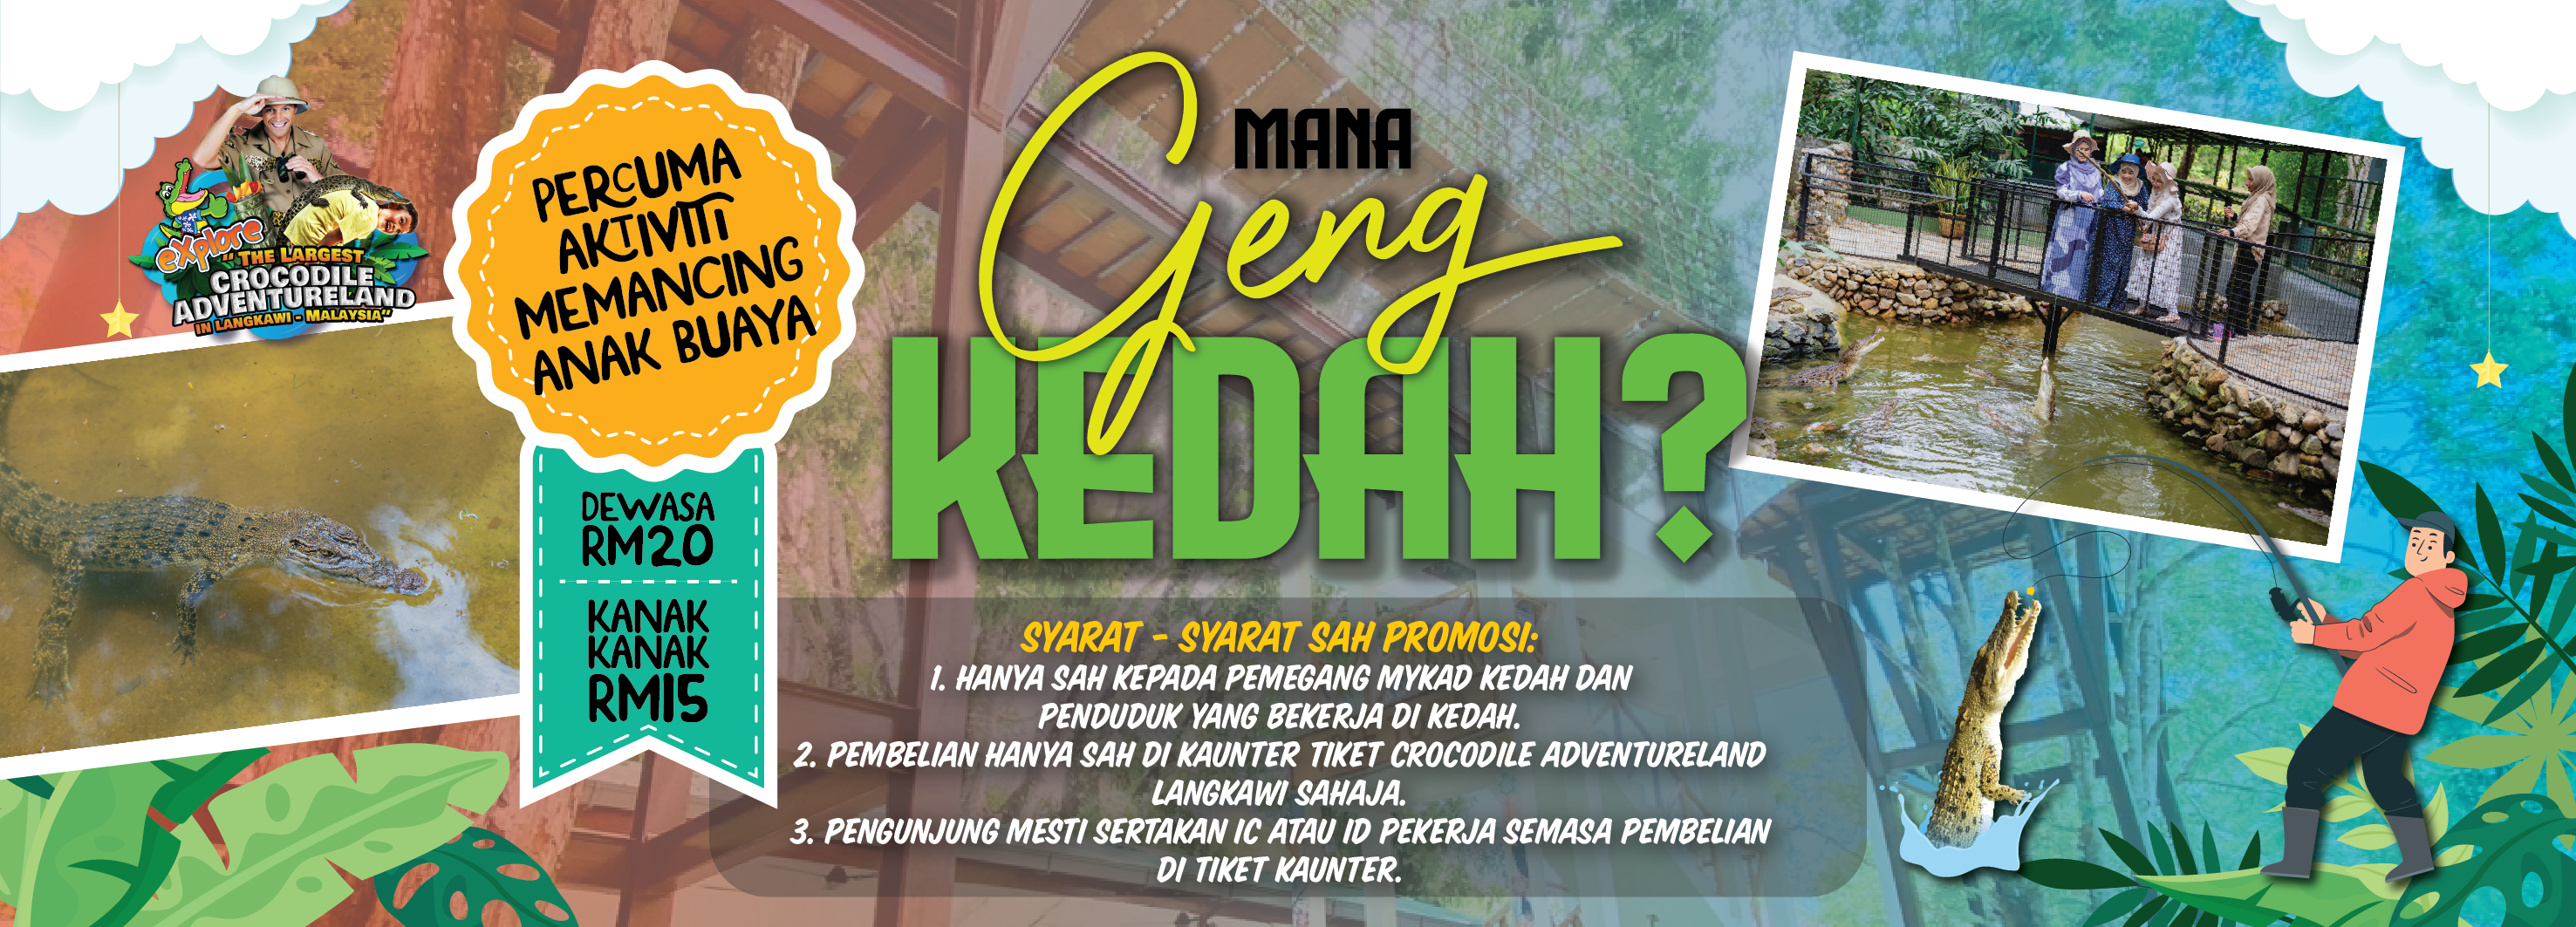 Promo Kedah